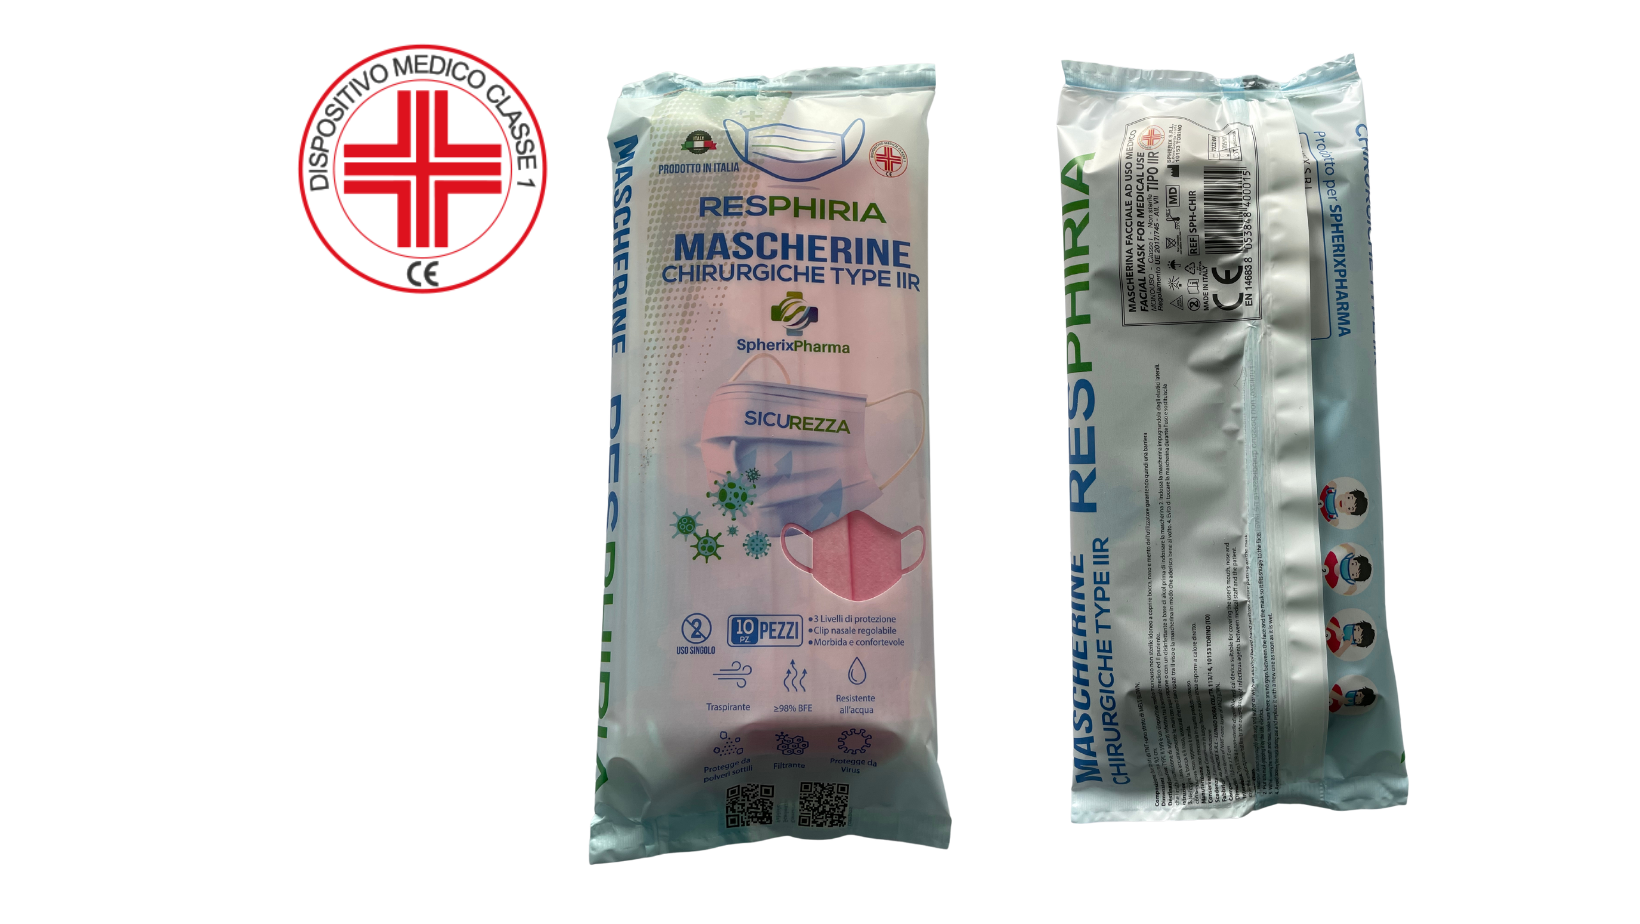 Mascherine chirurgiche type IIR, made in Italy presidio medico da 50 pz